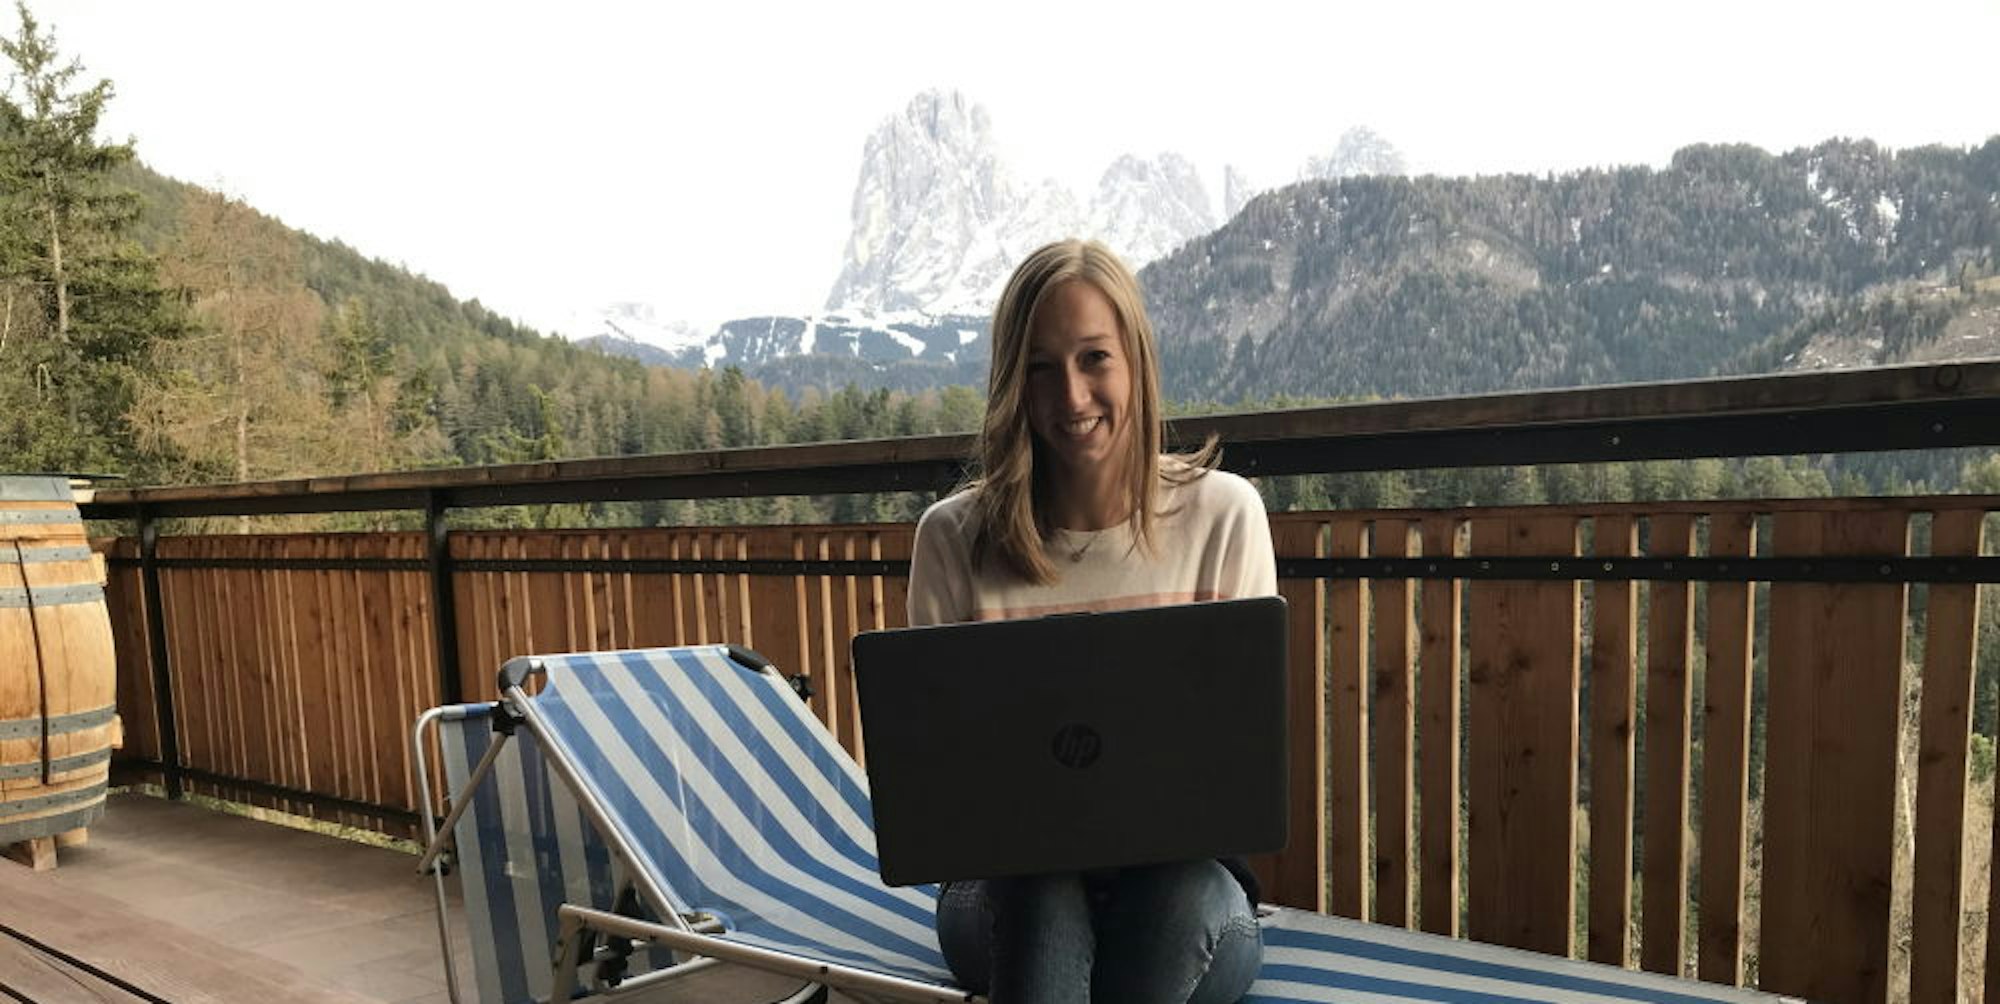 Balkon statt Seminarraum: Elena Runggaldier startet das neue Semester an der Hochschule von Südtirol aus.